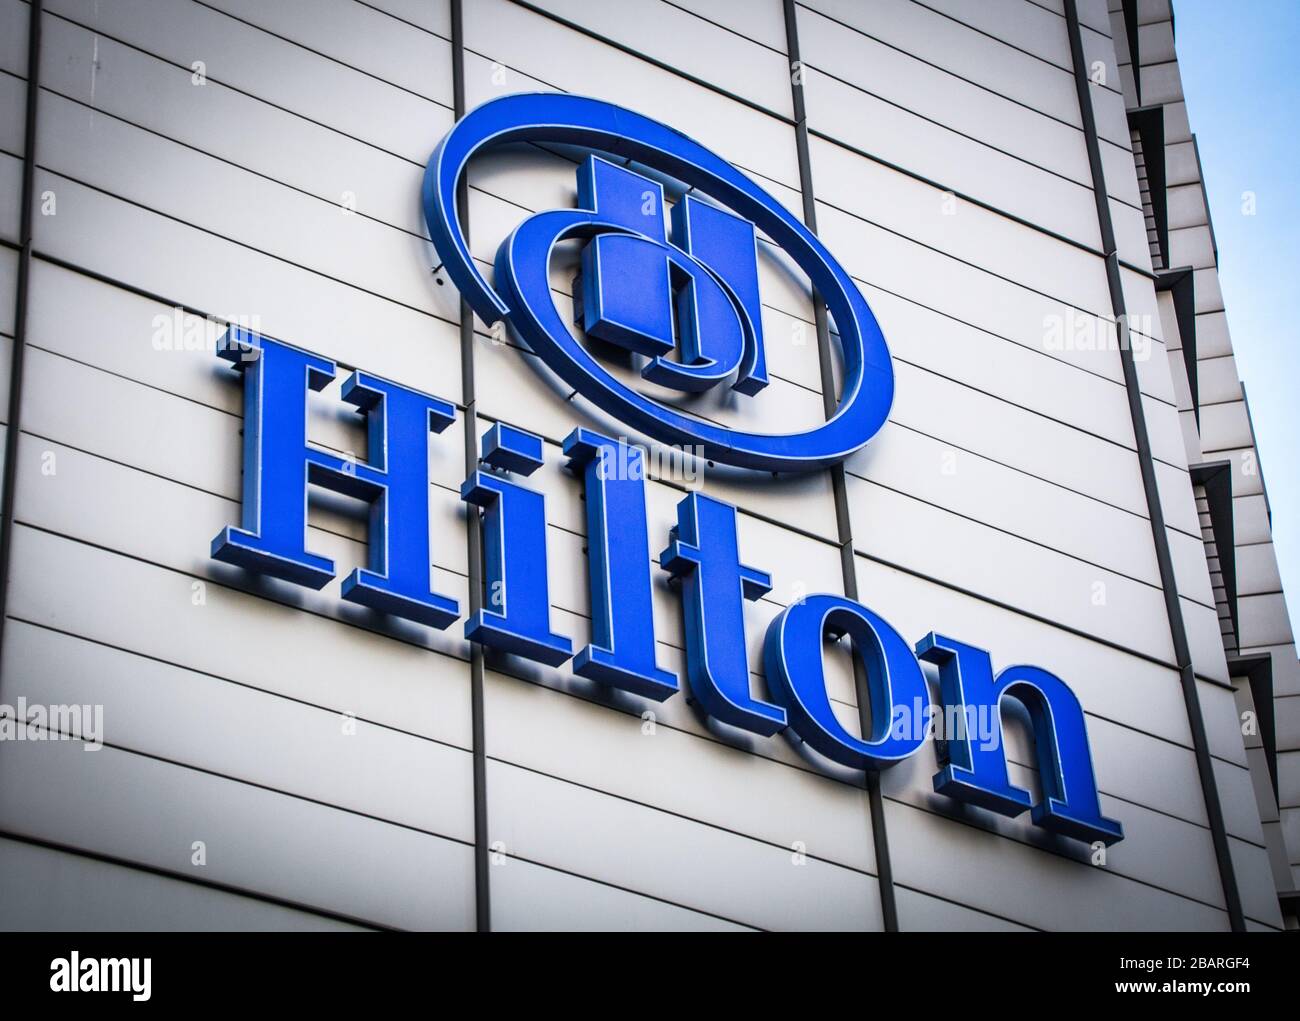 Il logo dell'hotel Hilton sull'esterno della filiale di Canary Wharf, la catena alberghiera e resort di fama mondiale americana Foto Stock